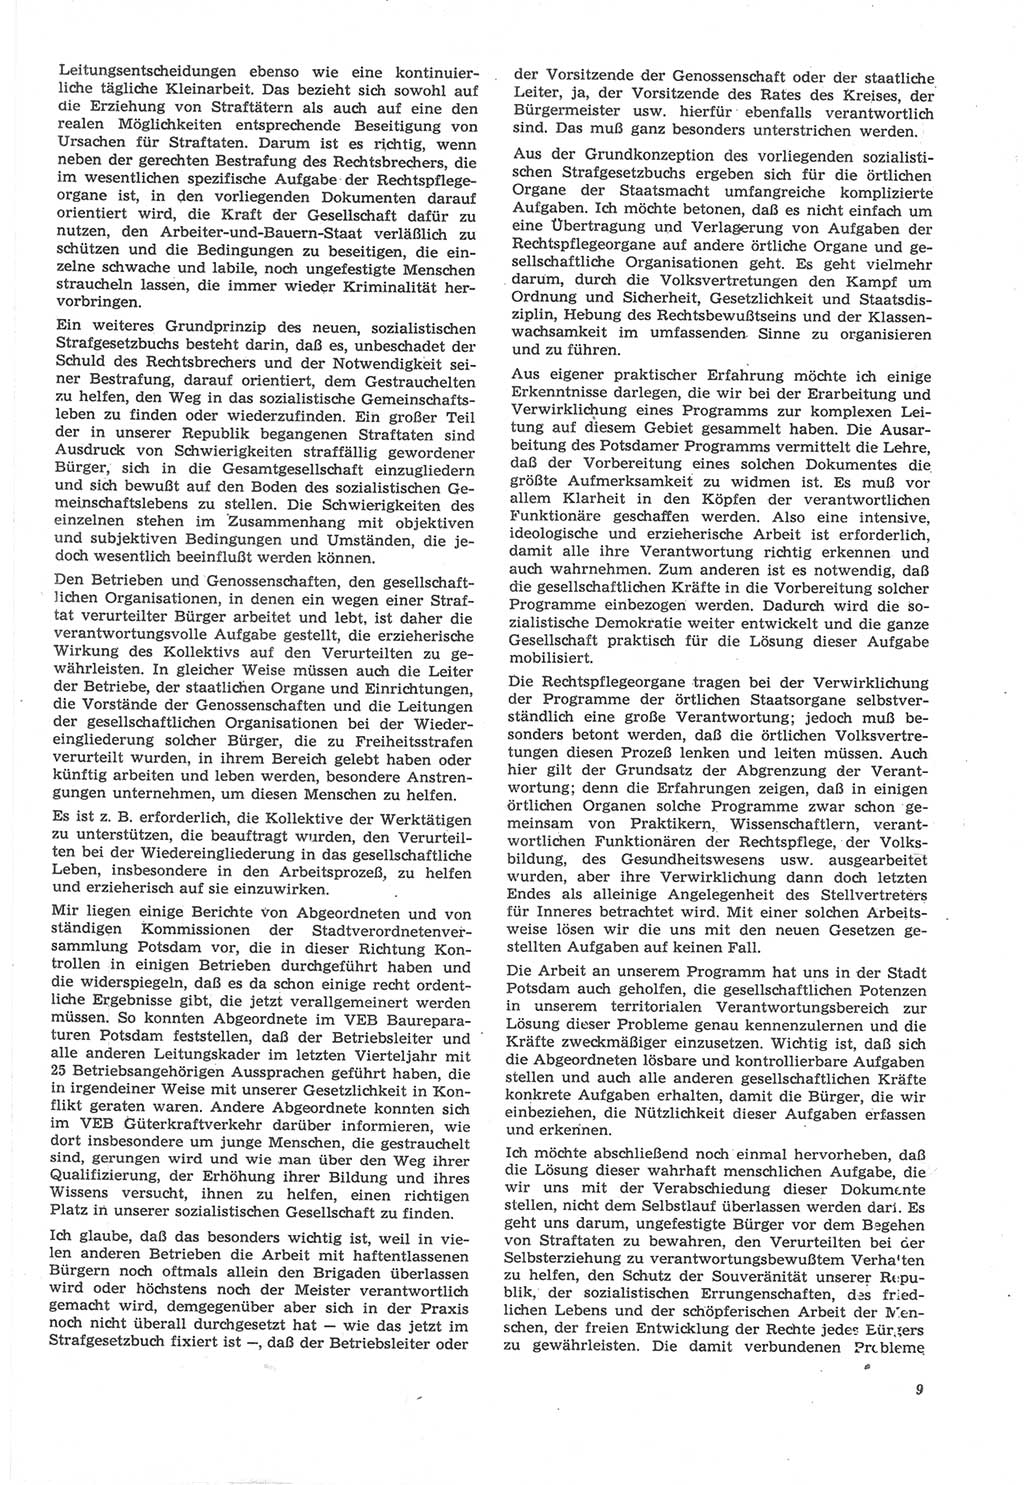 Neue Justiz (NJ), Zeitschrift für Recht und Rechtswissenschaft [Deutsche Demokratische Republik (DDR)], 22. Jahrgang 1968, Seite 9 (NJ DDR 1968, S. 9)